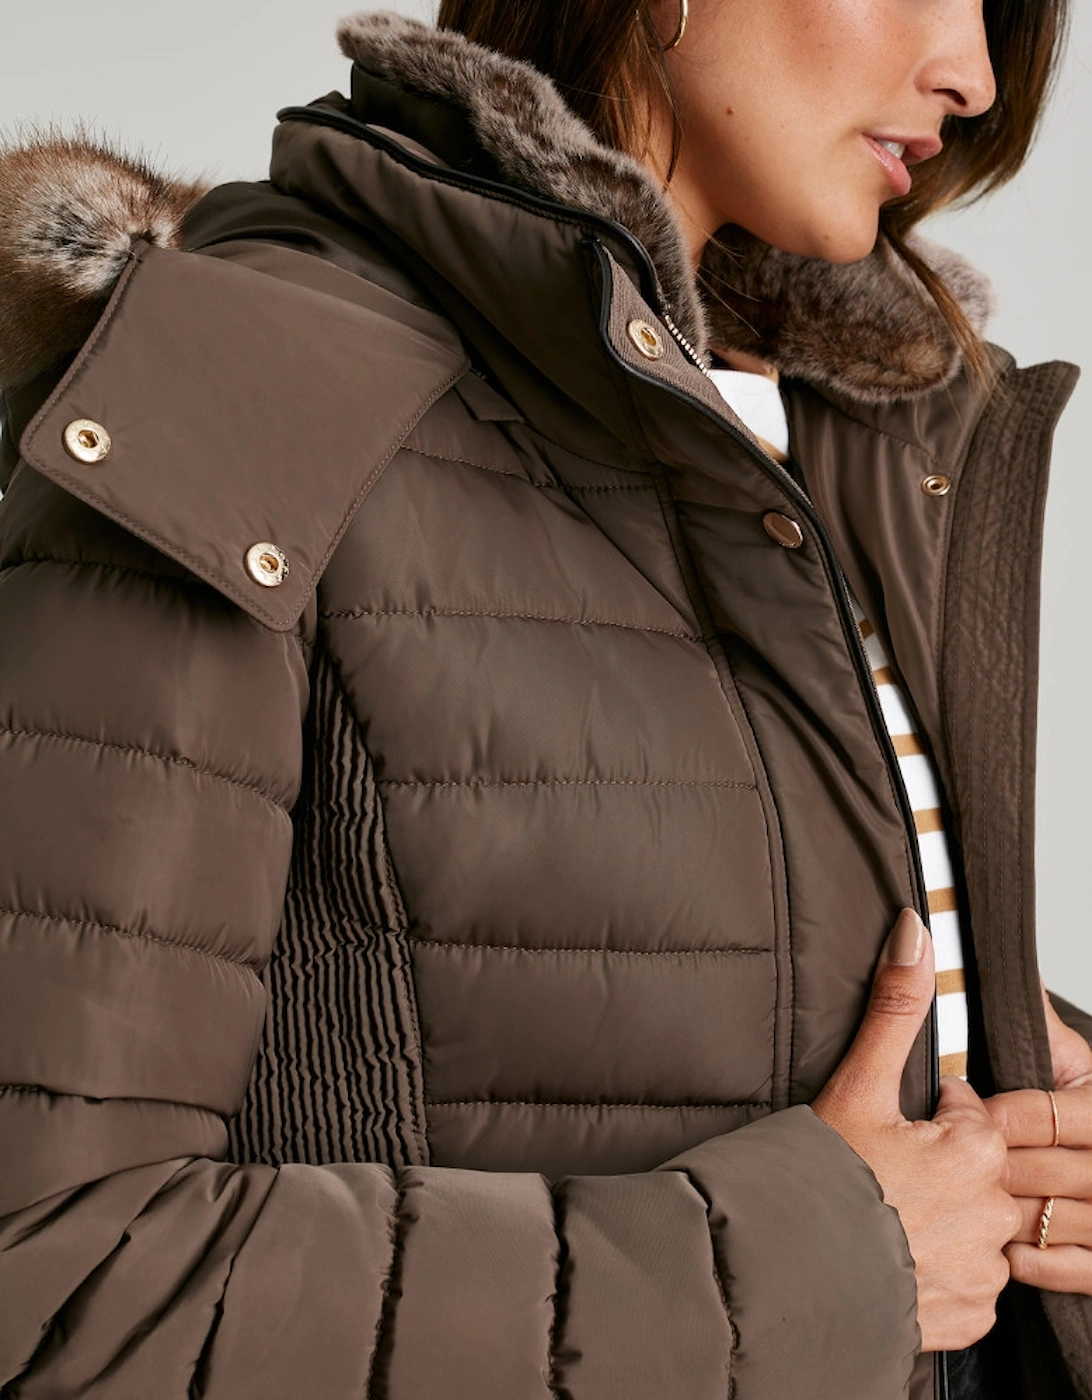 Womens Gosway Warm Padded Jacket Coat